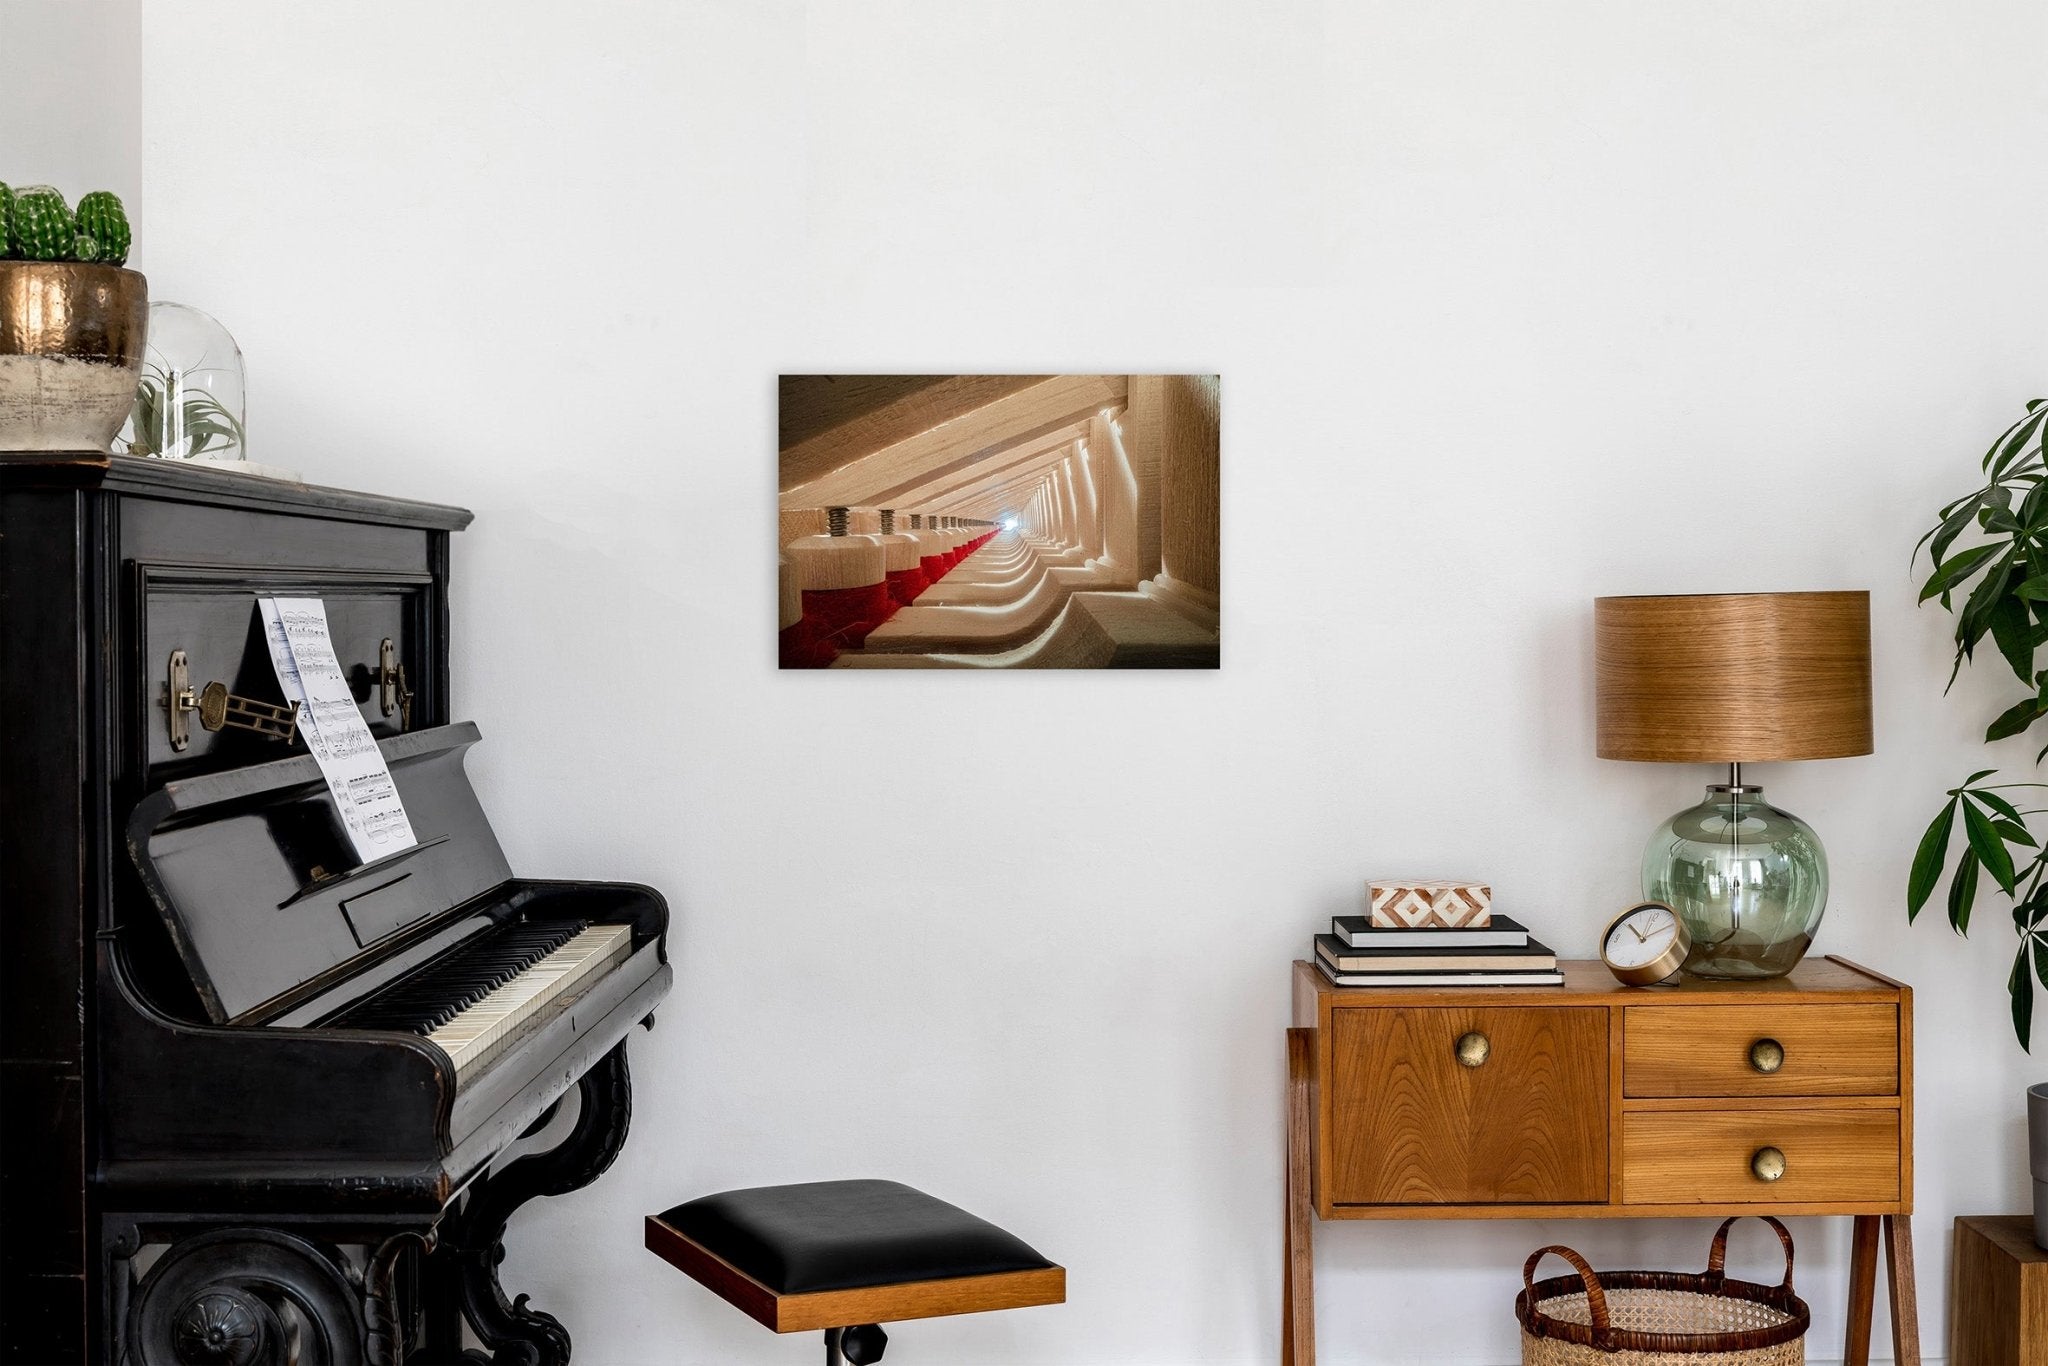 Photo of Fazioli Grand Piano Part 1. Aluminium Print. - Aluminium Print - Architecture In Music